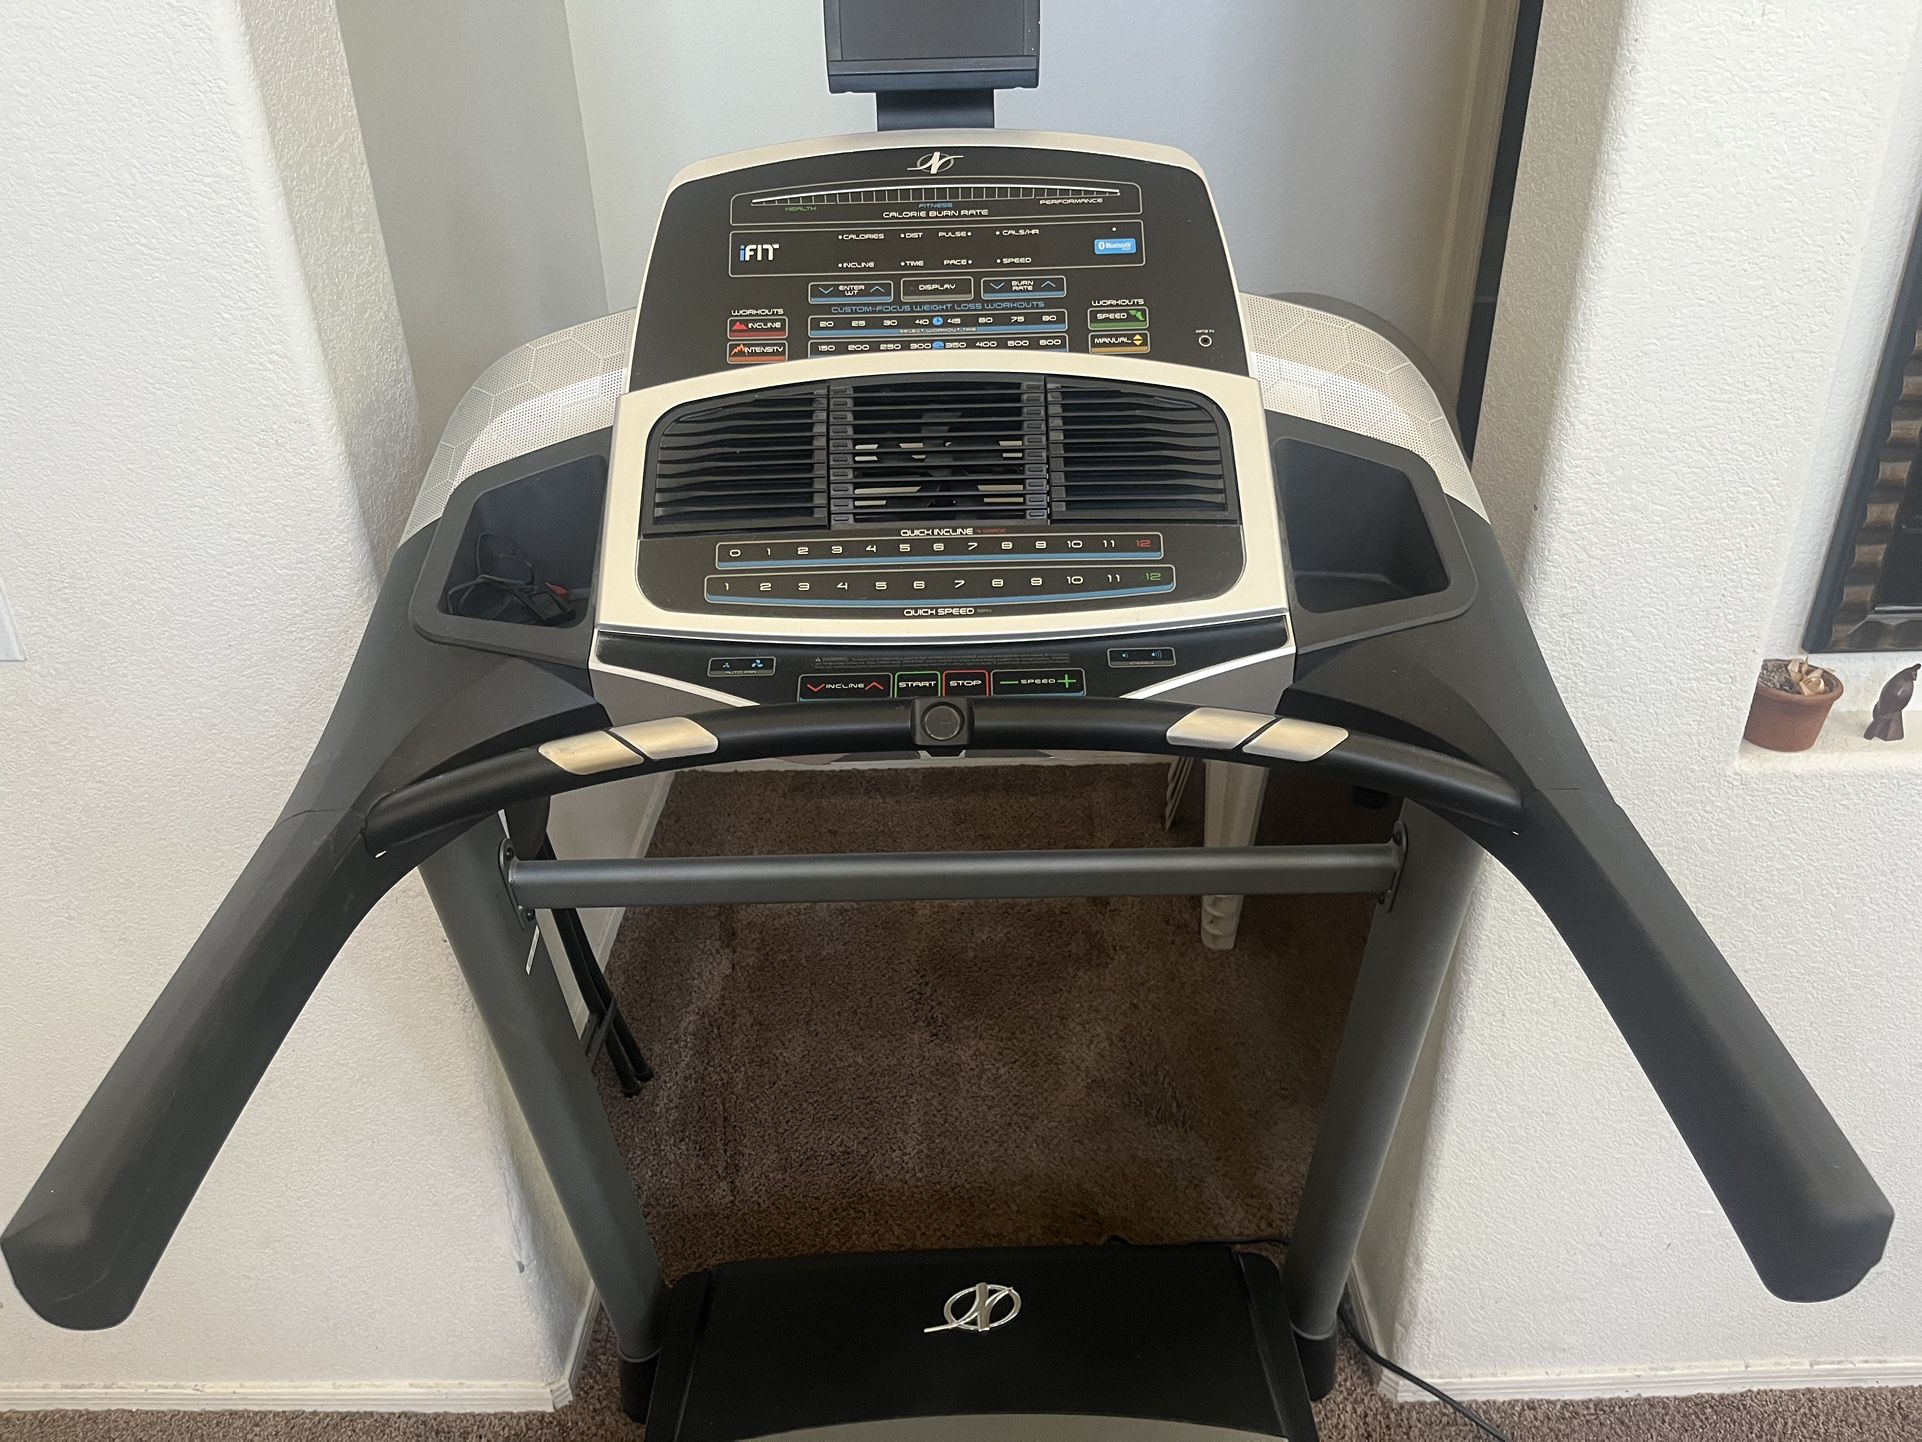 Nordictrack C950i Treadmill